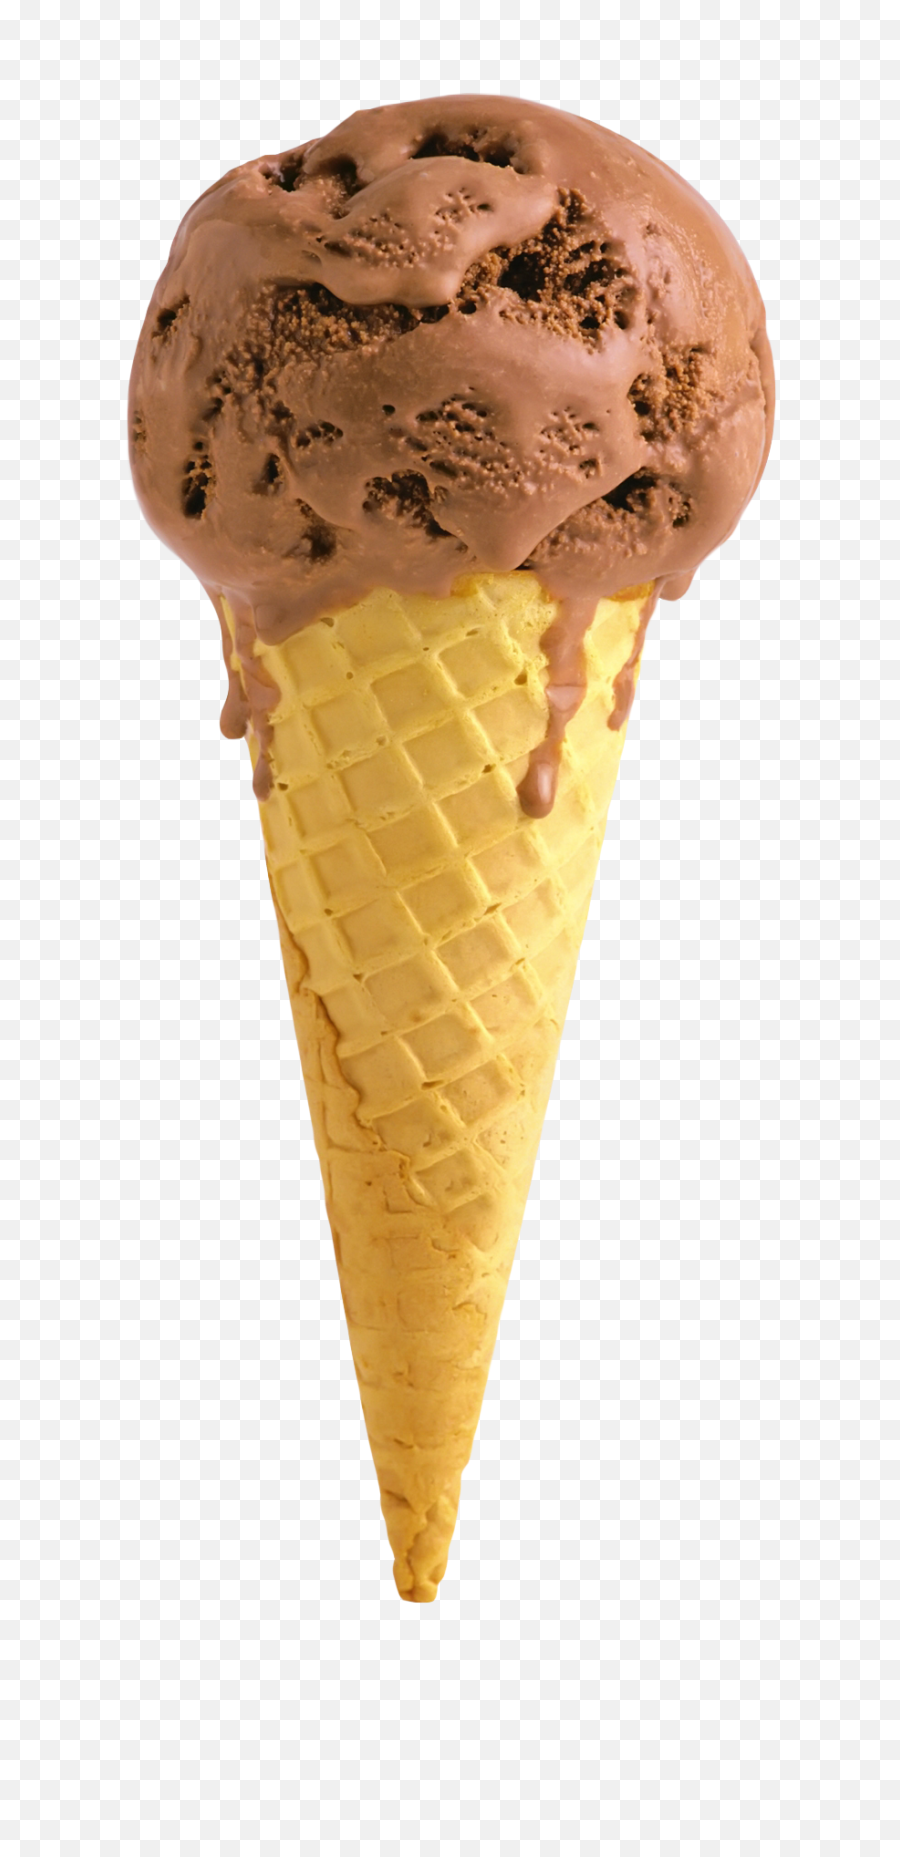 Ice Cream Cone Png Image - Transparent Background Ice Cream Png,Ice Cream Scoop Png